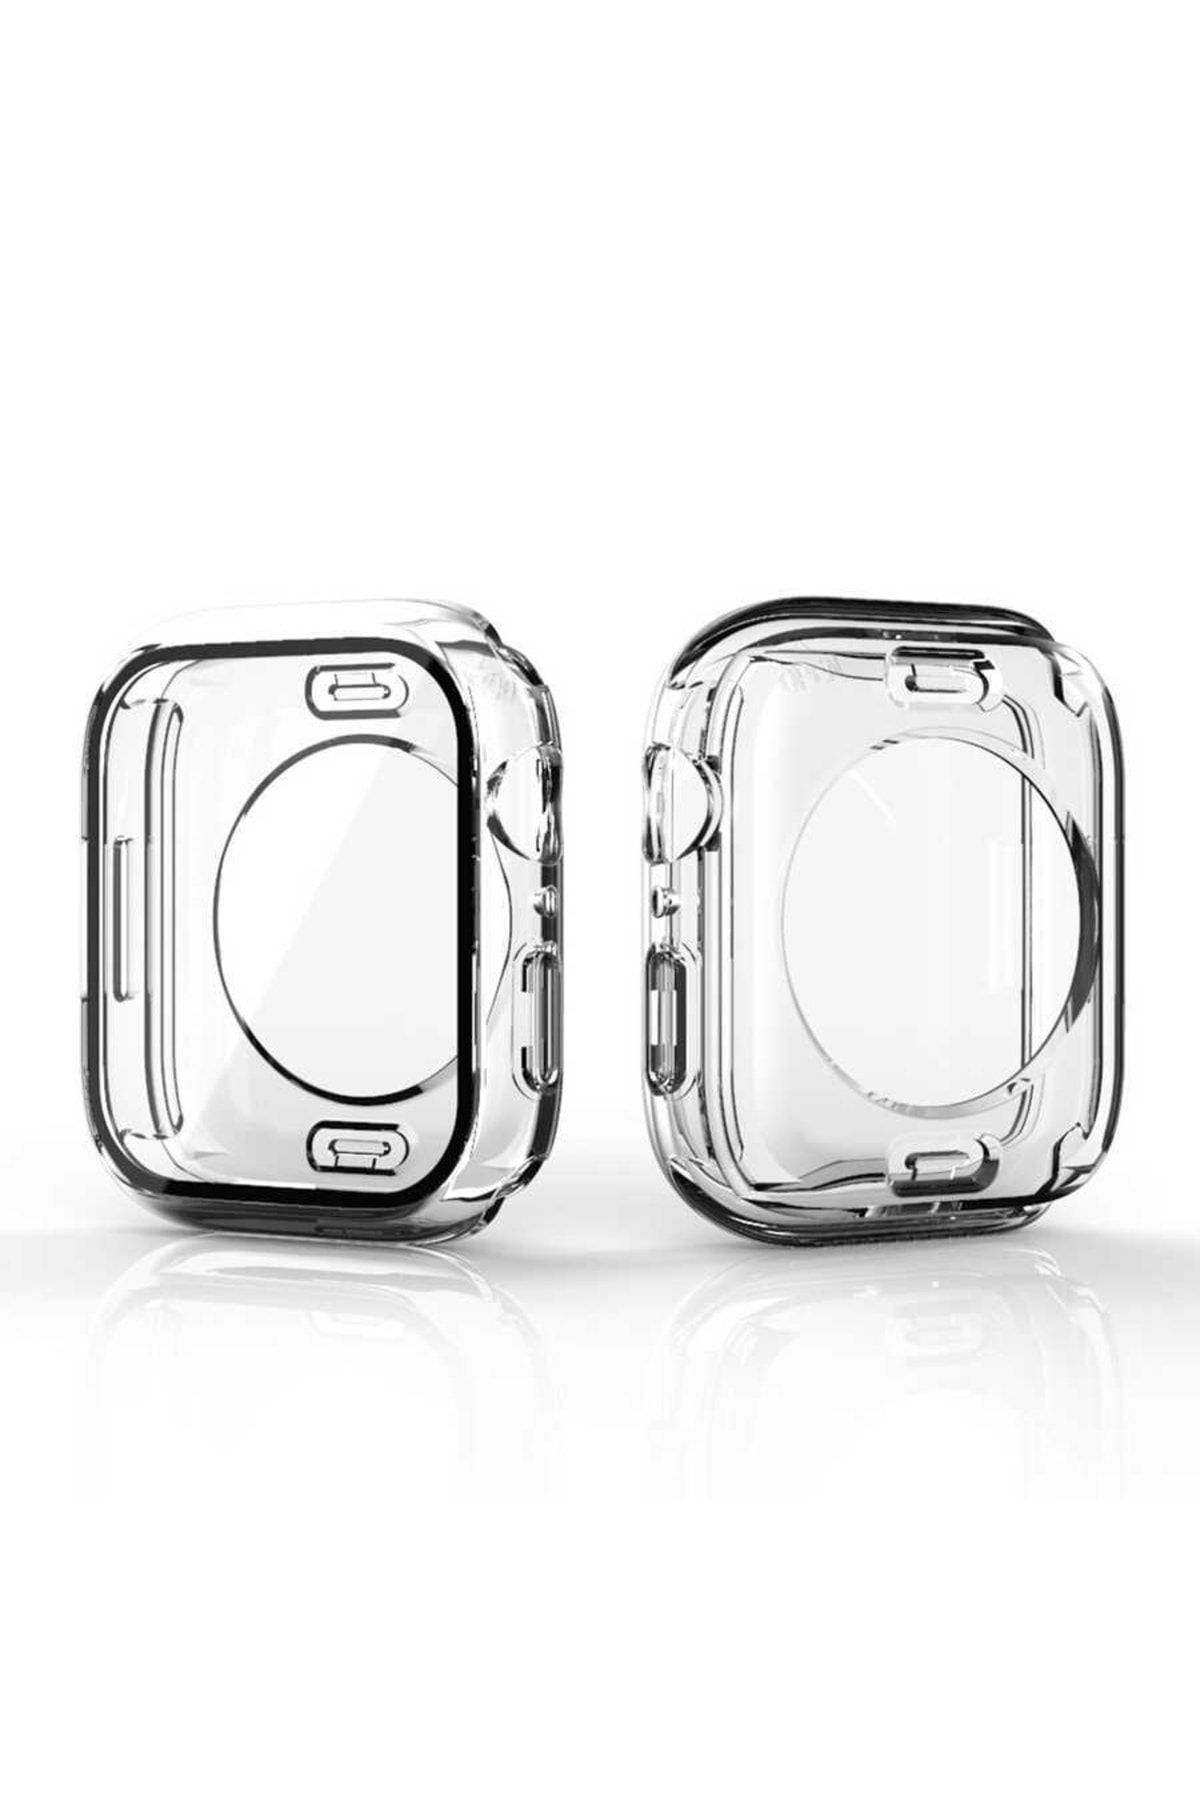 SMCASE Watch Series 8 Uyumlu 41mm Kasa Ve Ekran 360 Derece Koruma Sert Silikon Gard 12 Renksiz